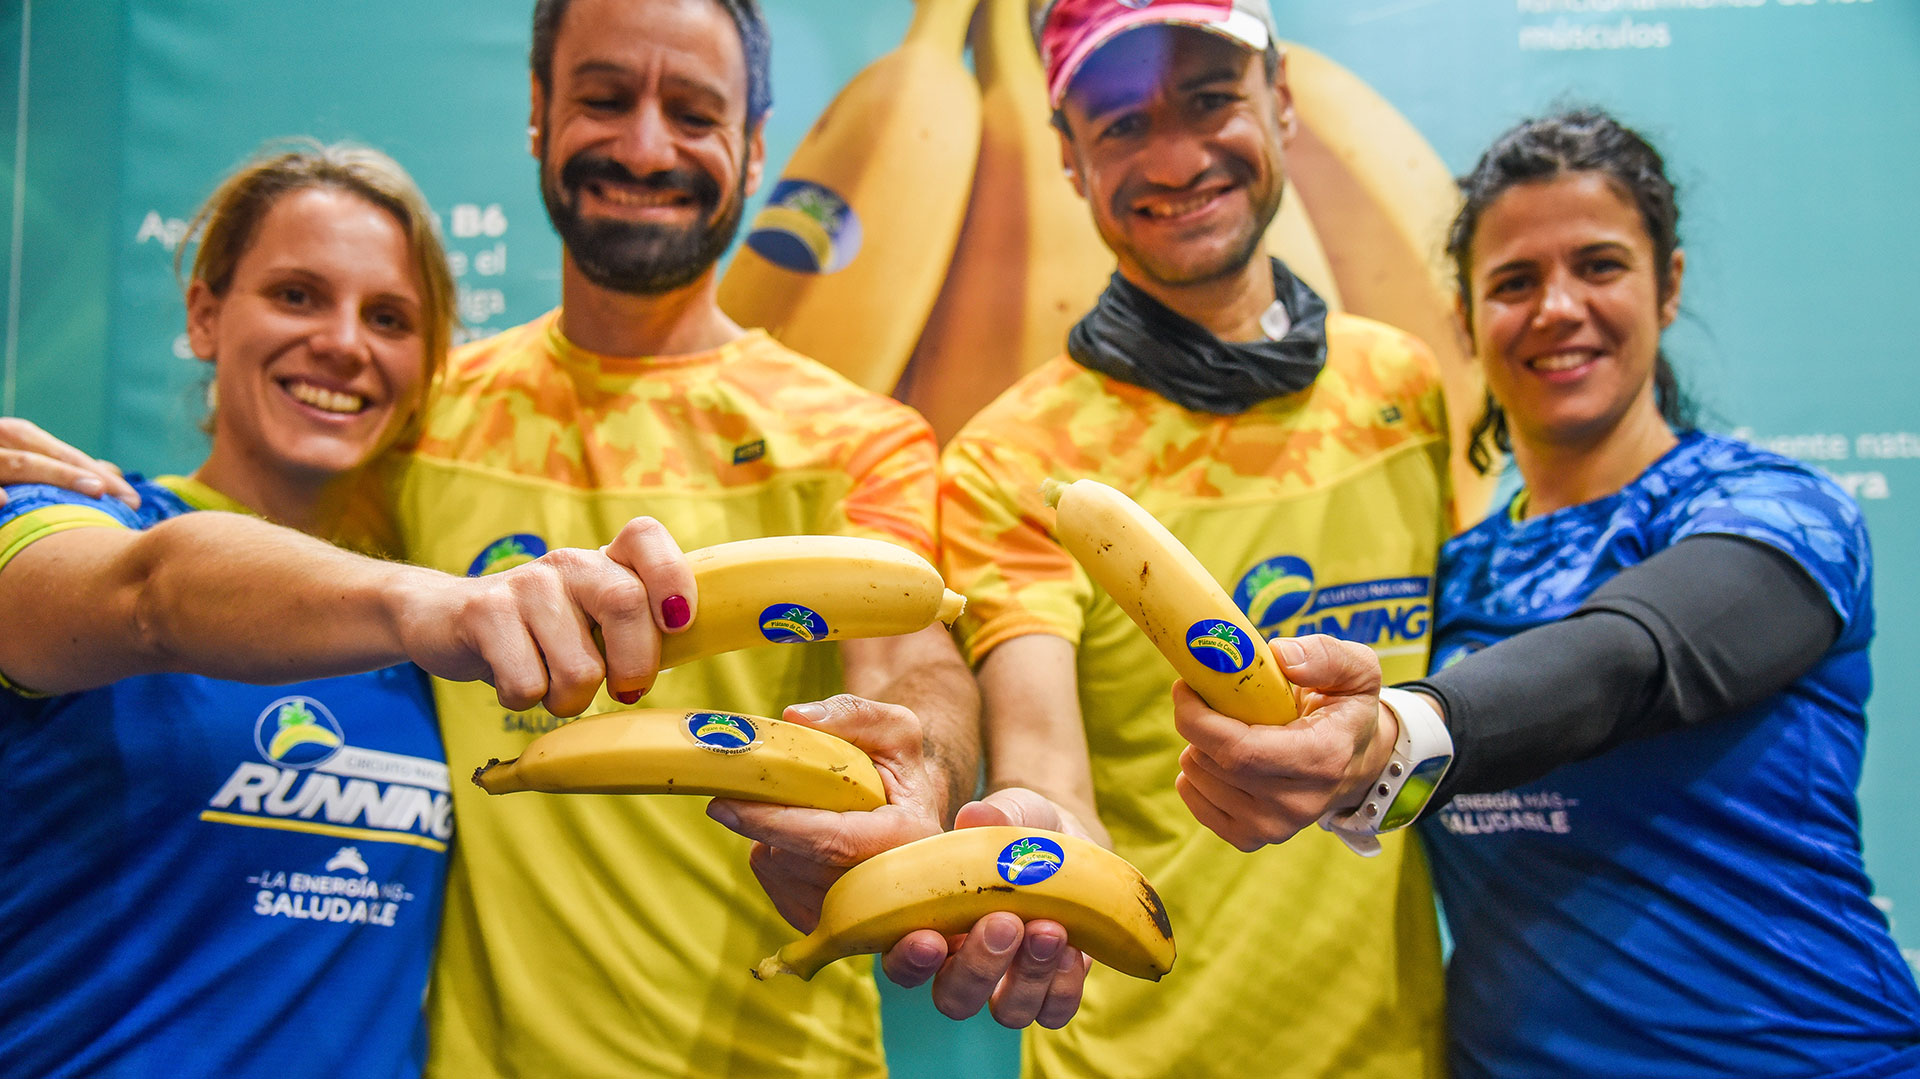 El desafío #CorreRetaDona finaliza con más de 40.000 kilómetros